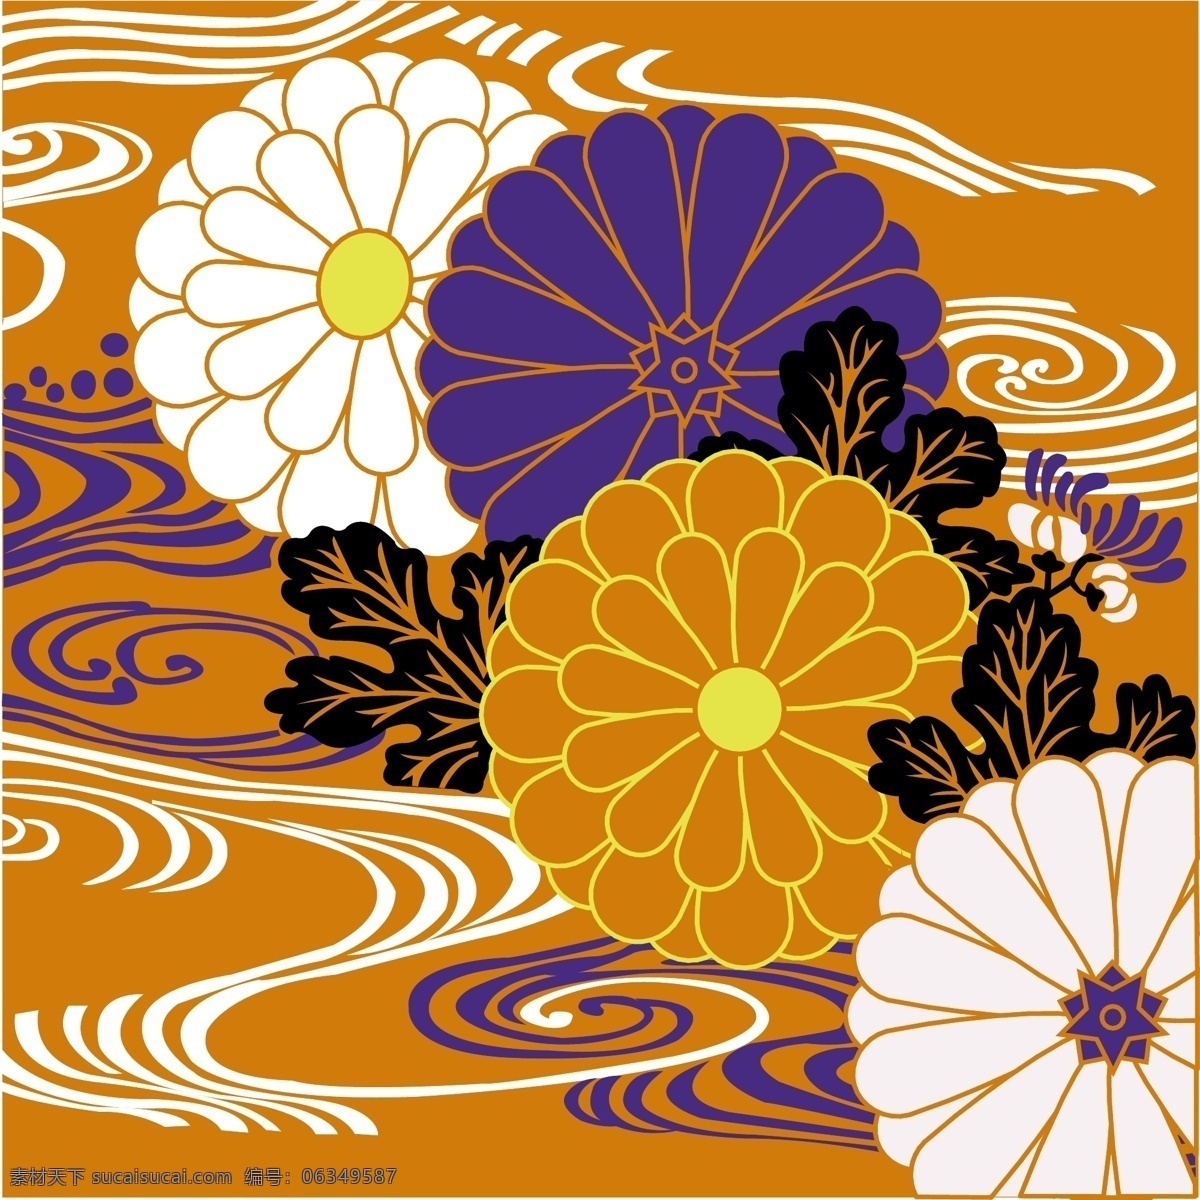 日本 传统 图案 模板 设计稿 素材元素 源文件 花卉植物 矢量图